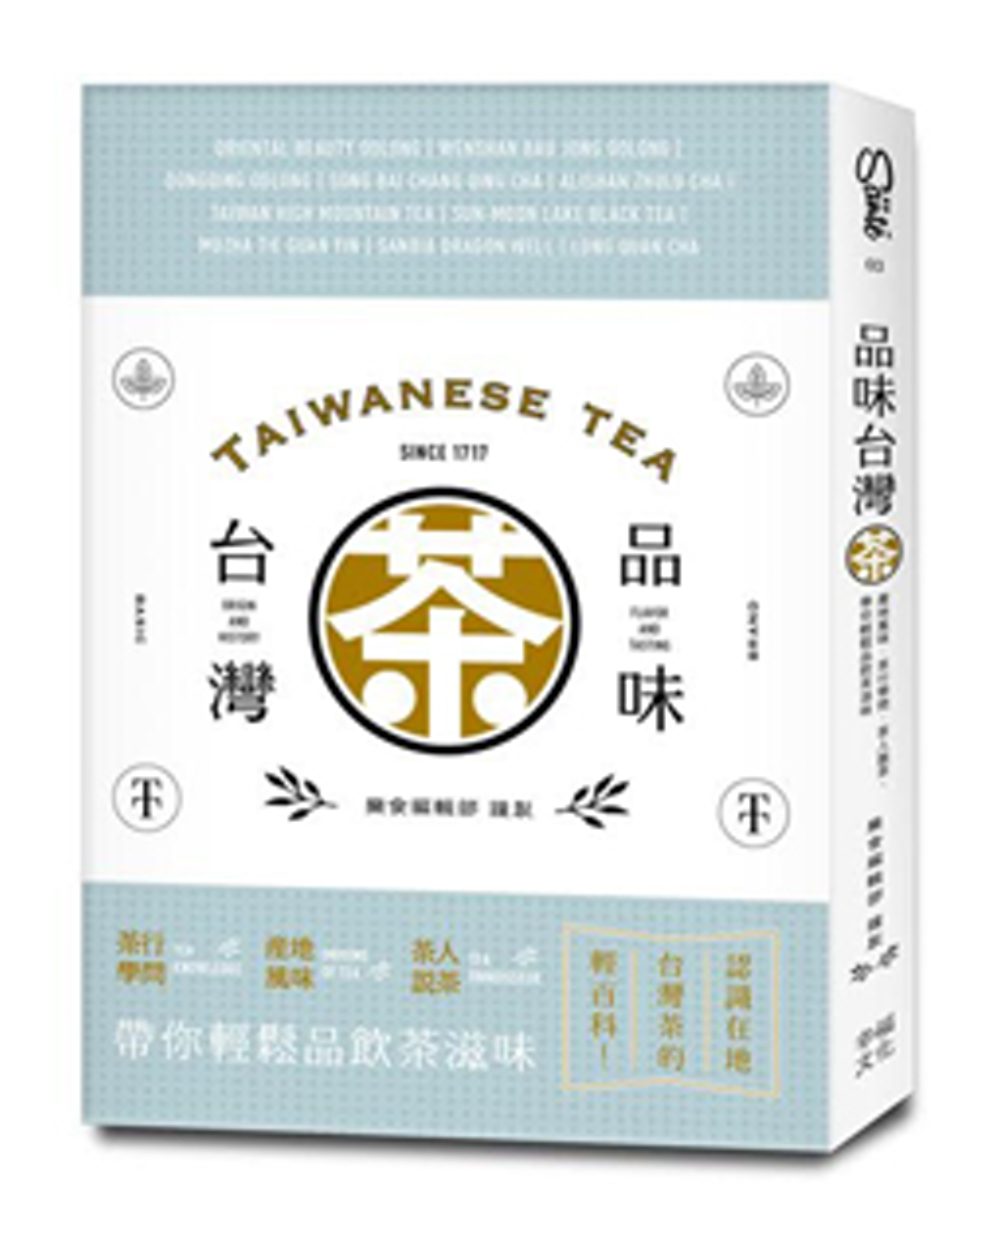 品味台灣茶：茶行學問•產地風味•茶人說茶，帶你輕鬆品飲茶滋味